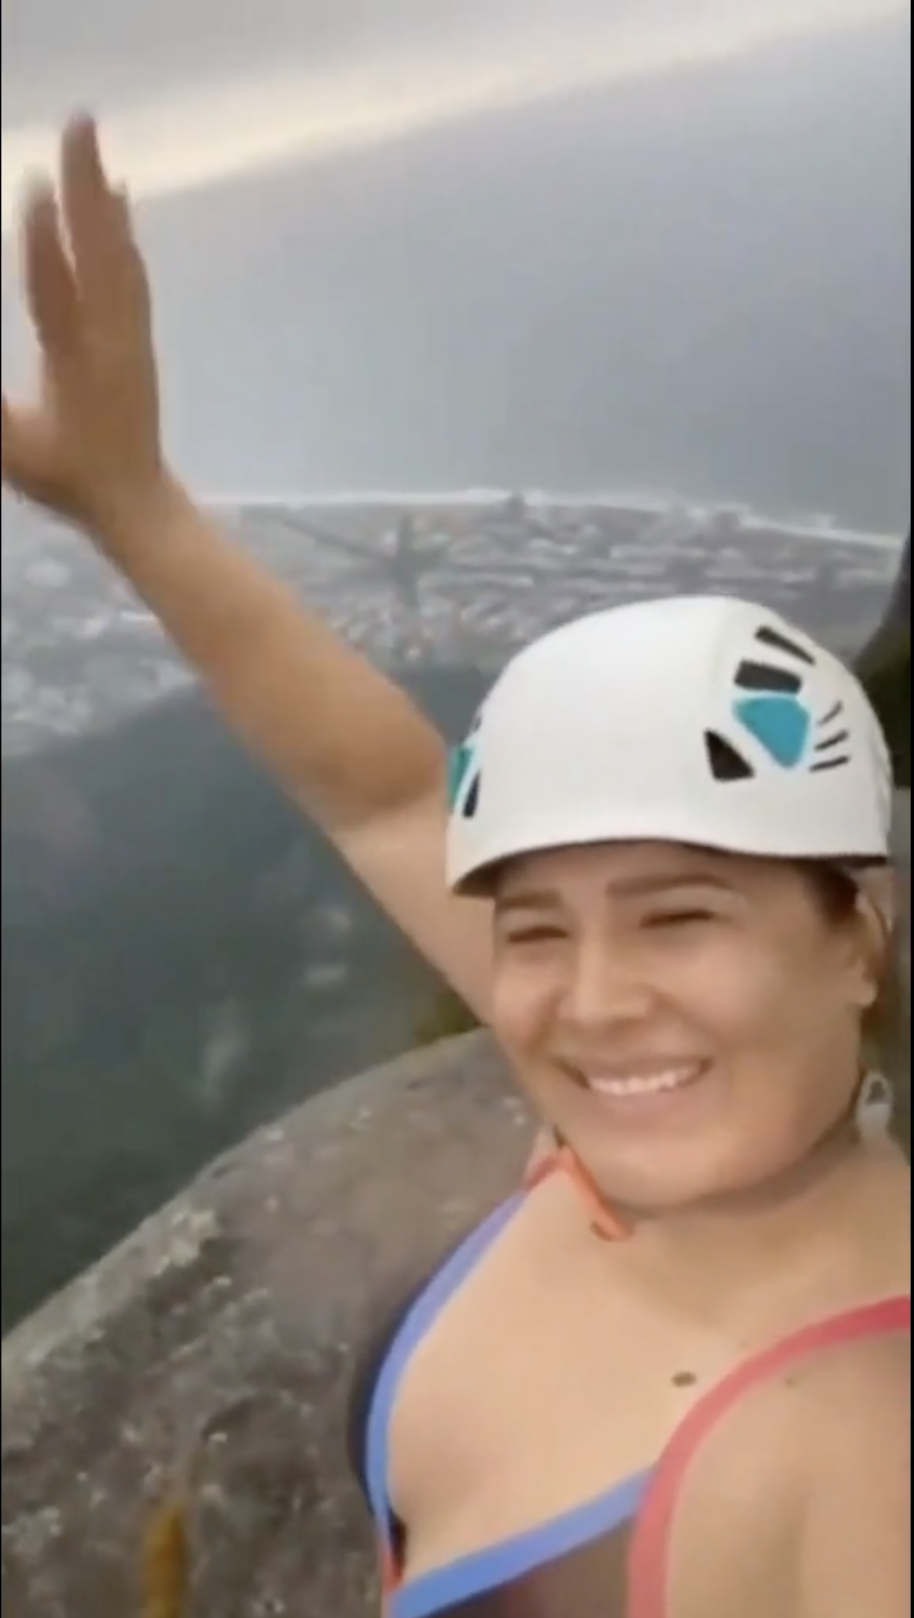 36-letni przewodnik zginął rażony piorunem na szczycie klifu: turysta przypadkowo sfilmował jego ostatnie chwile